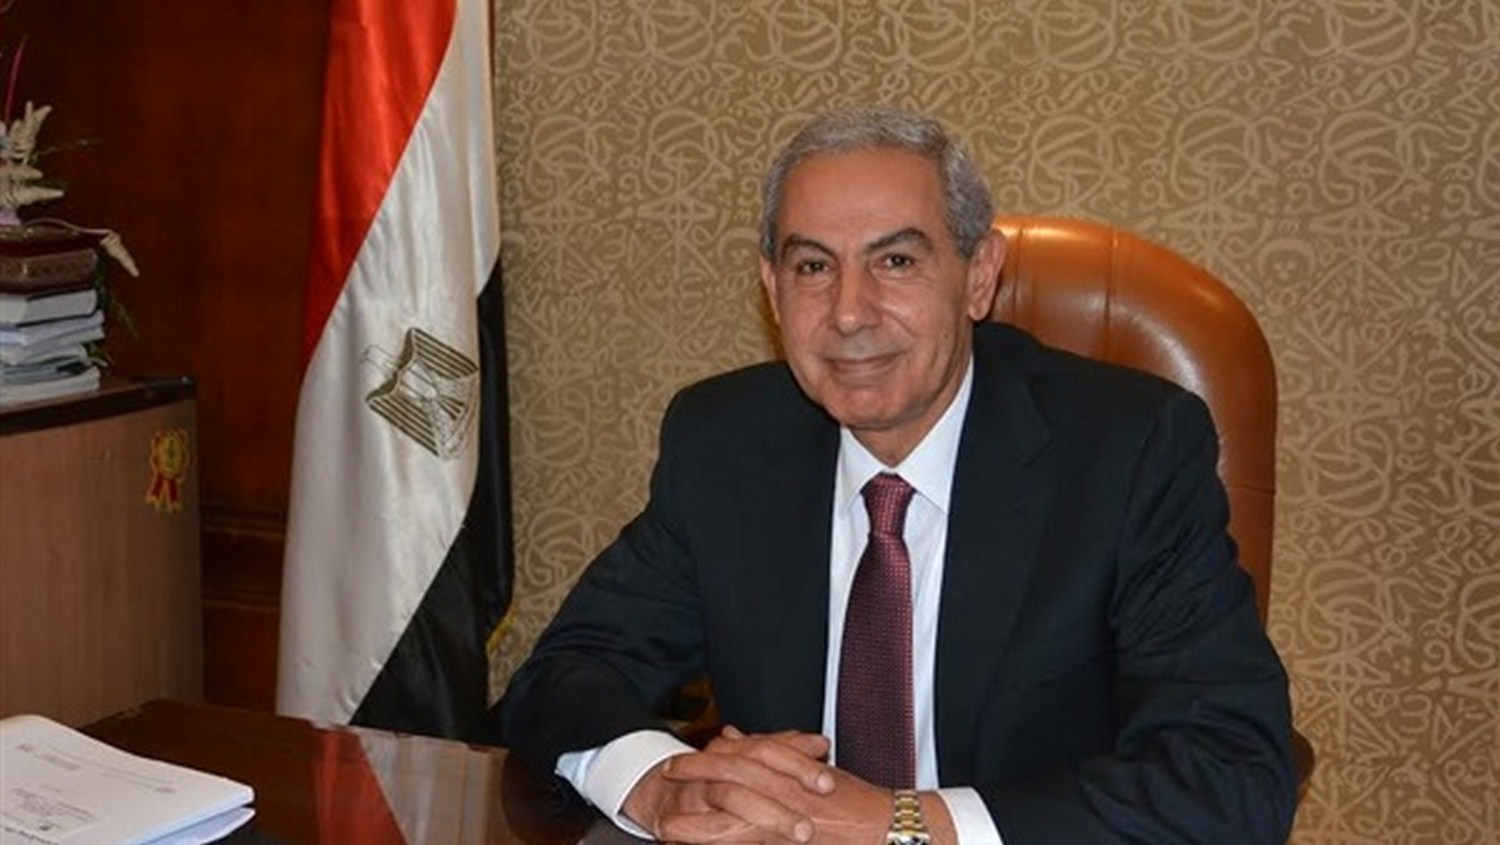   قابيل: اعتماد الزراعة العضوية للتمور المصرية